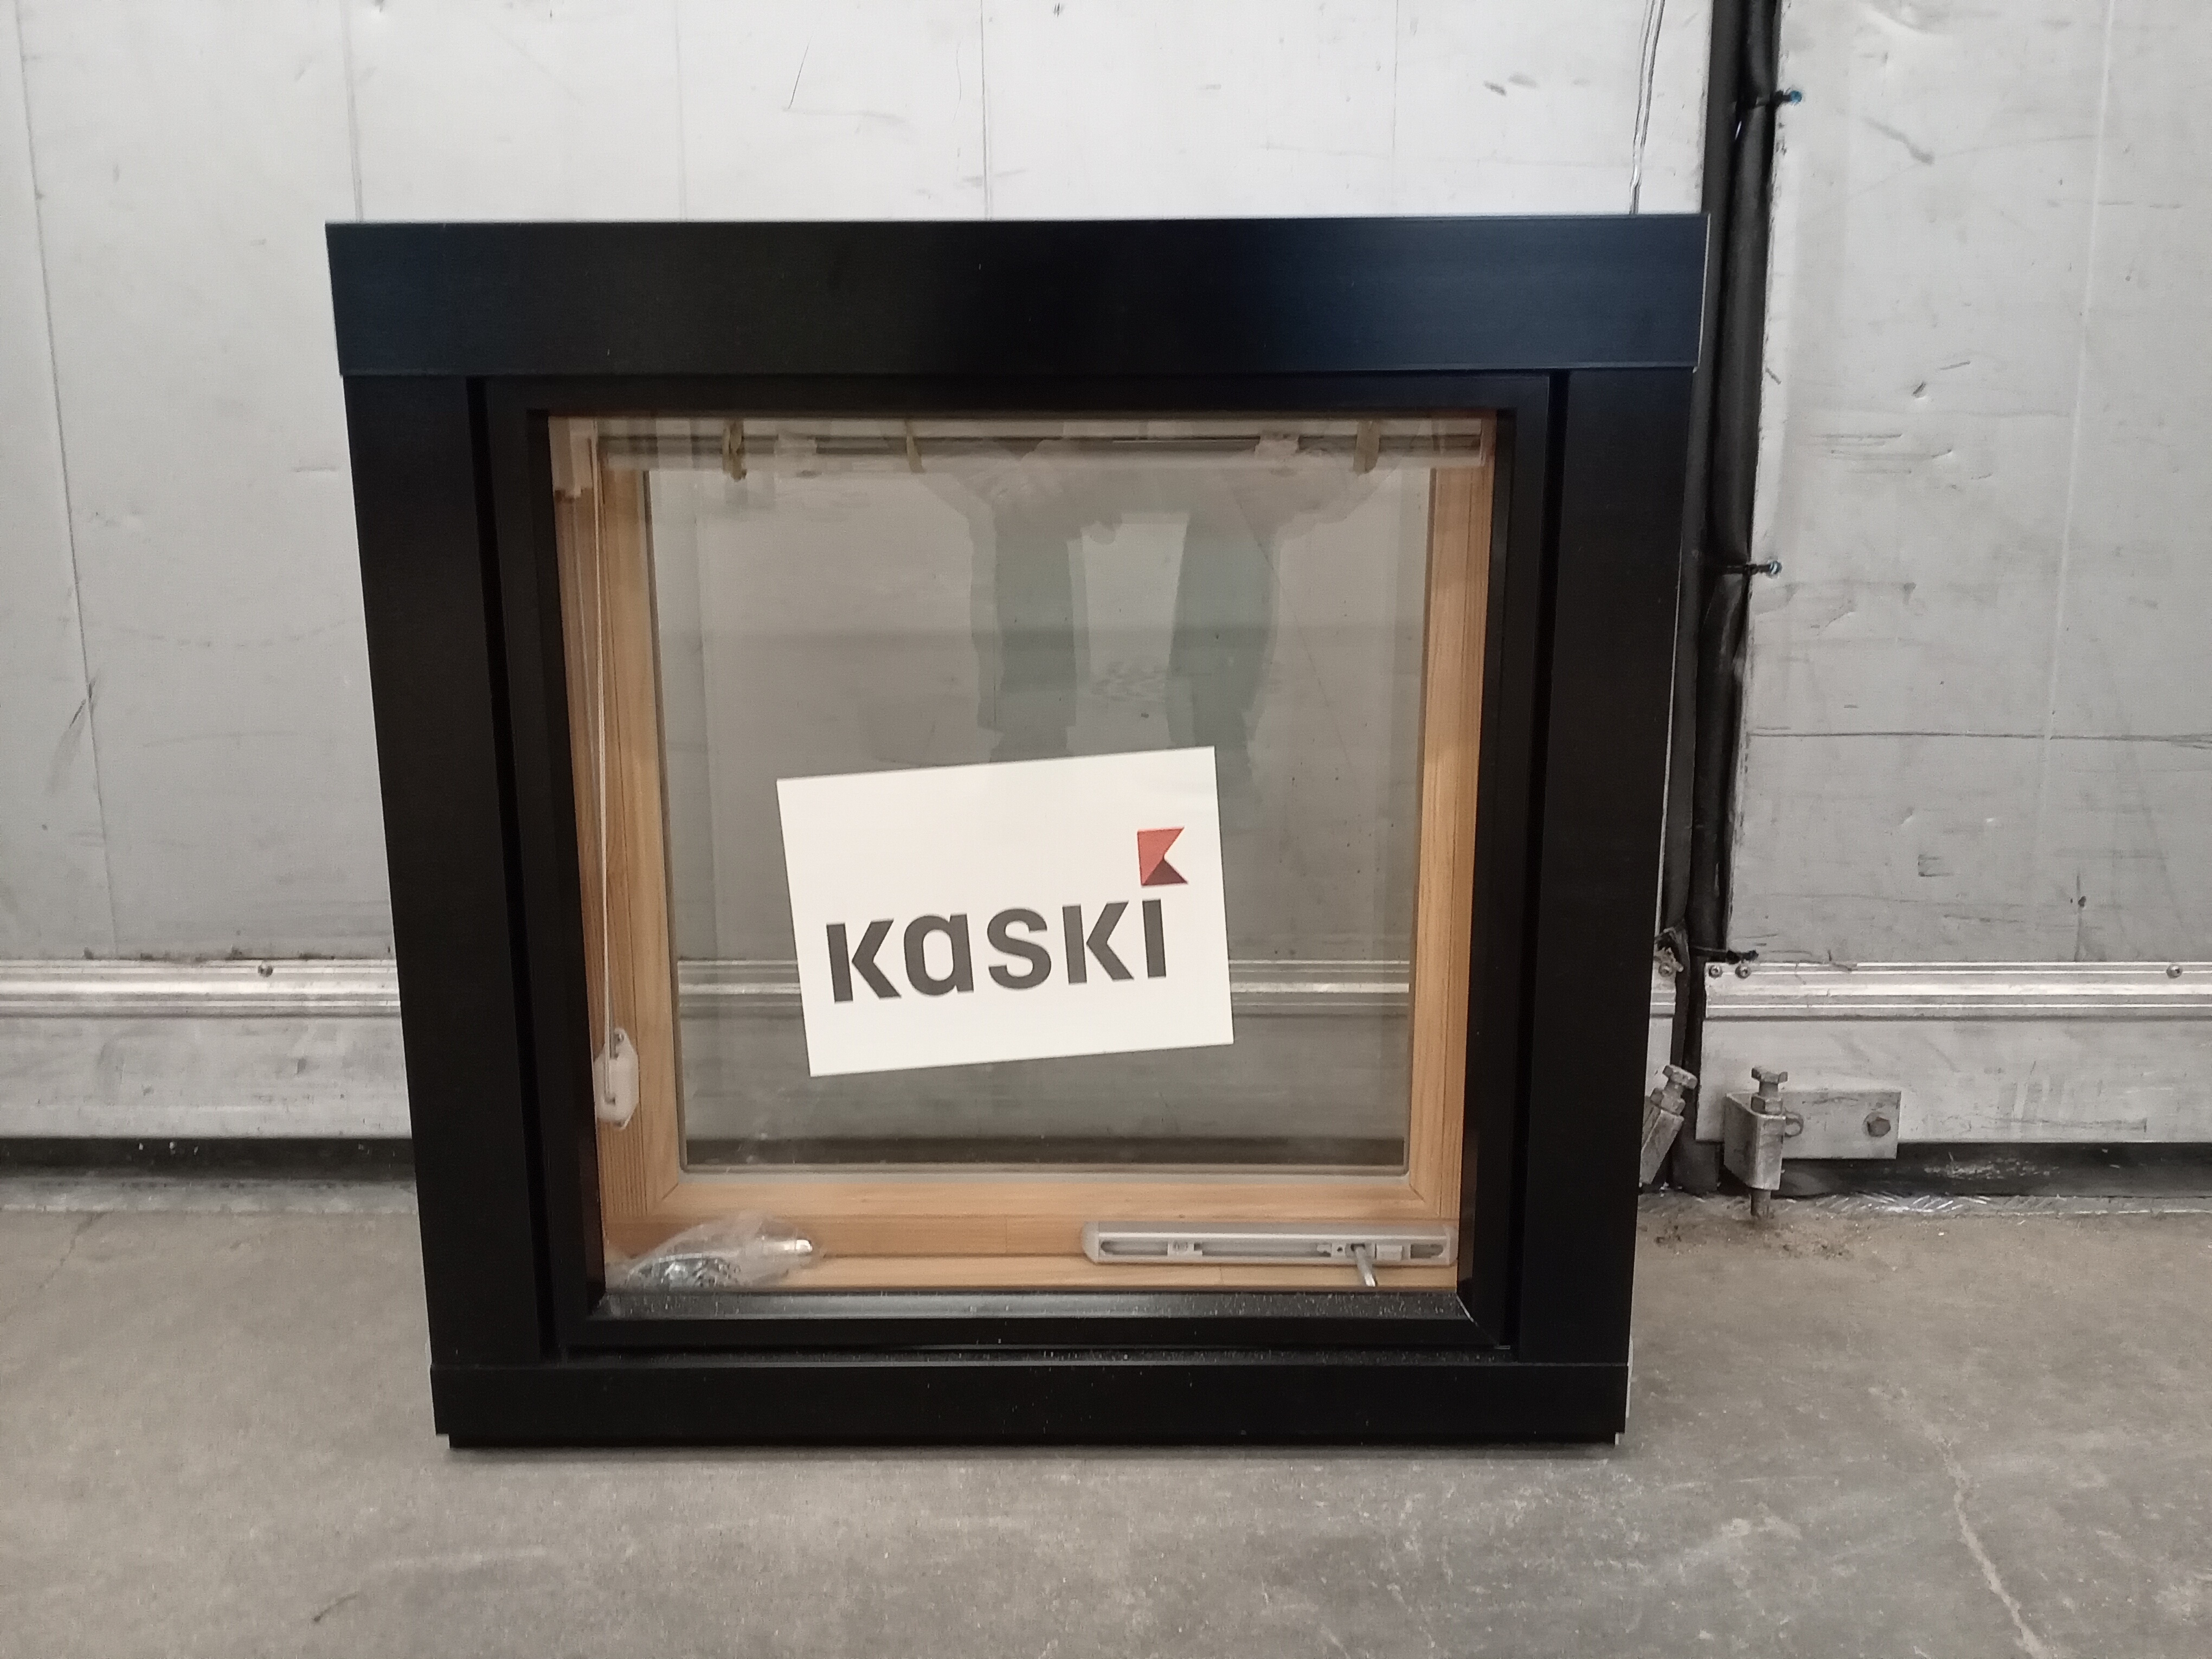 KP3894 Kaskipuu MSEA 170, 590x590, Bastu/svart, 6x6